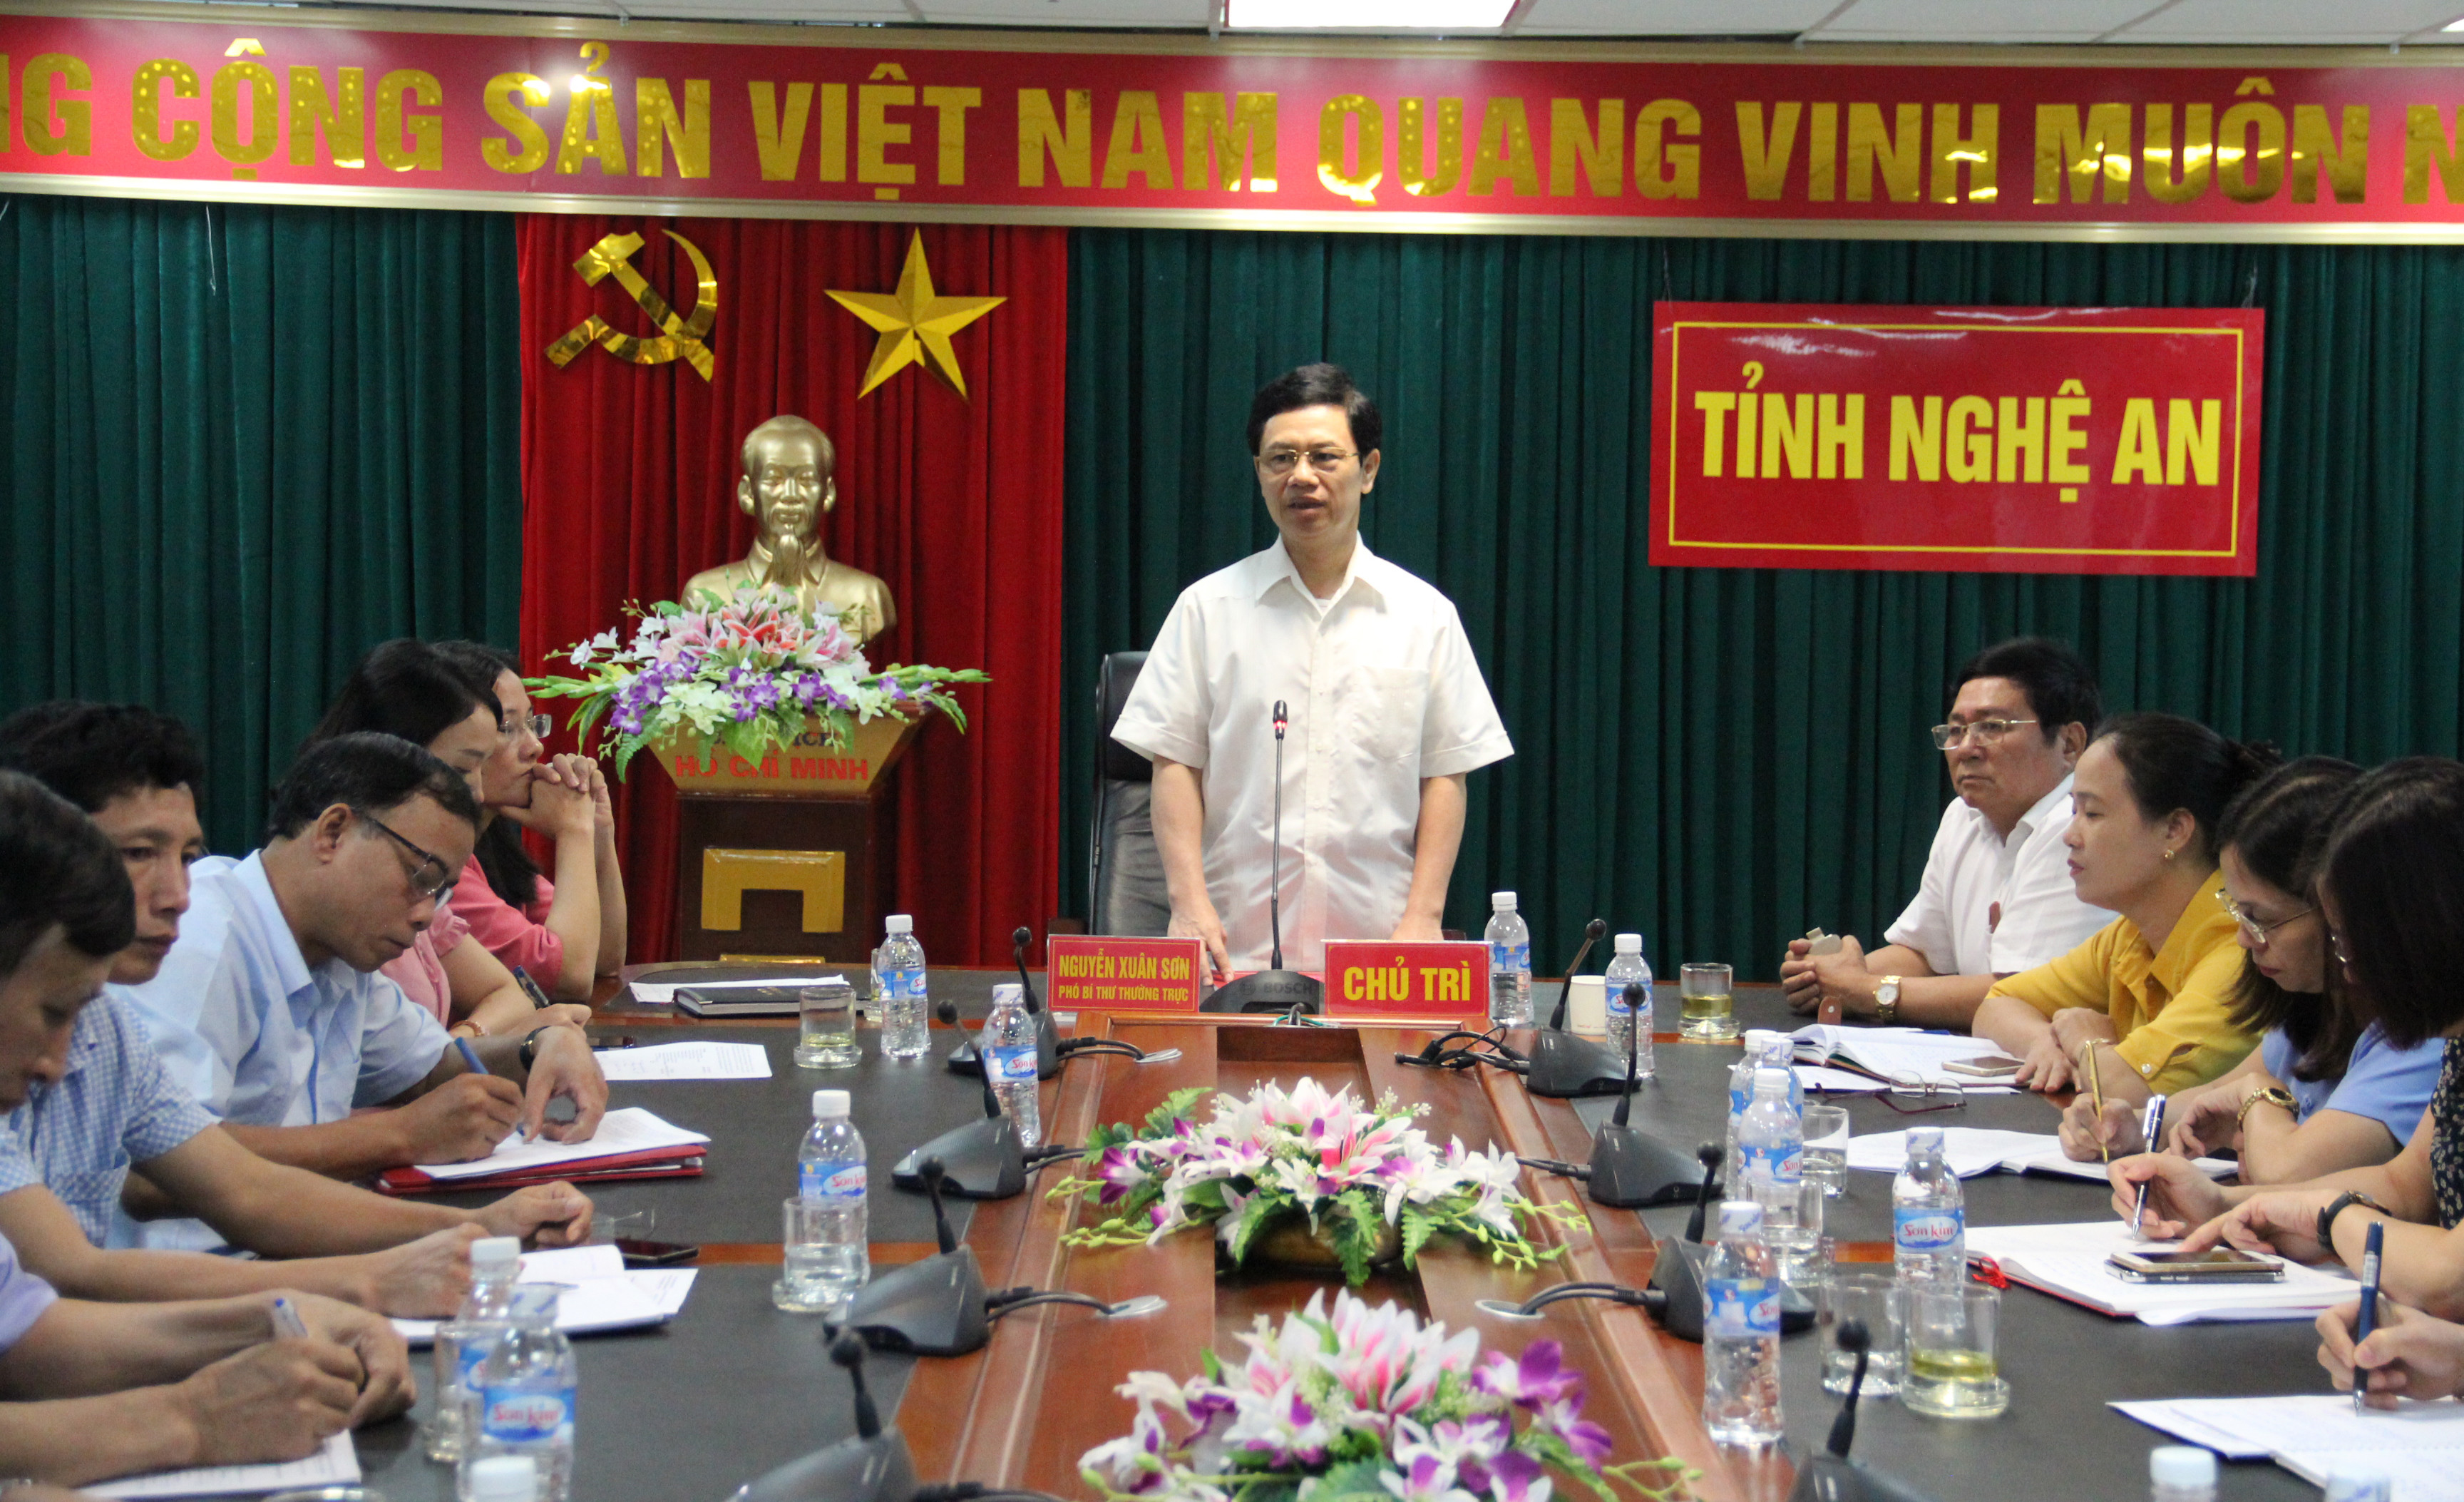 Đồng chí Nguyễn Xuân Sơn chủ trì tại điểm cầu Nghệ An. Ảnh: Kim Oanh